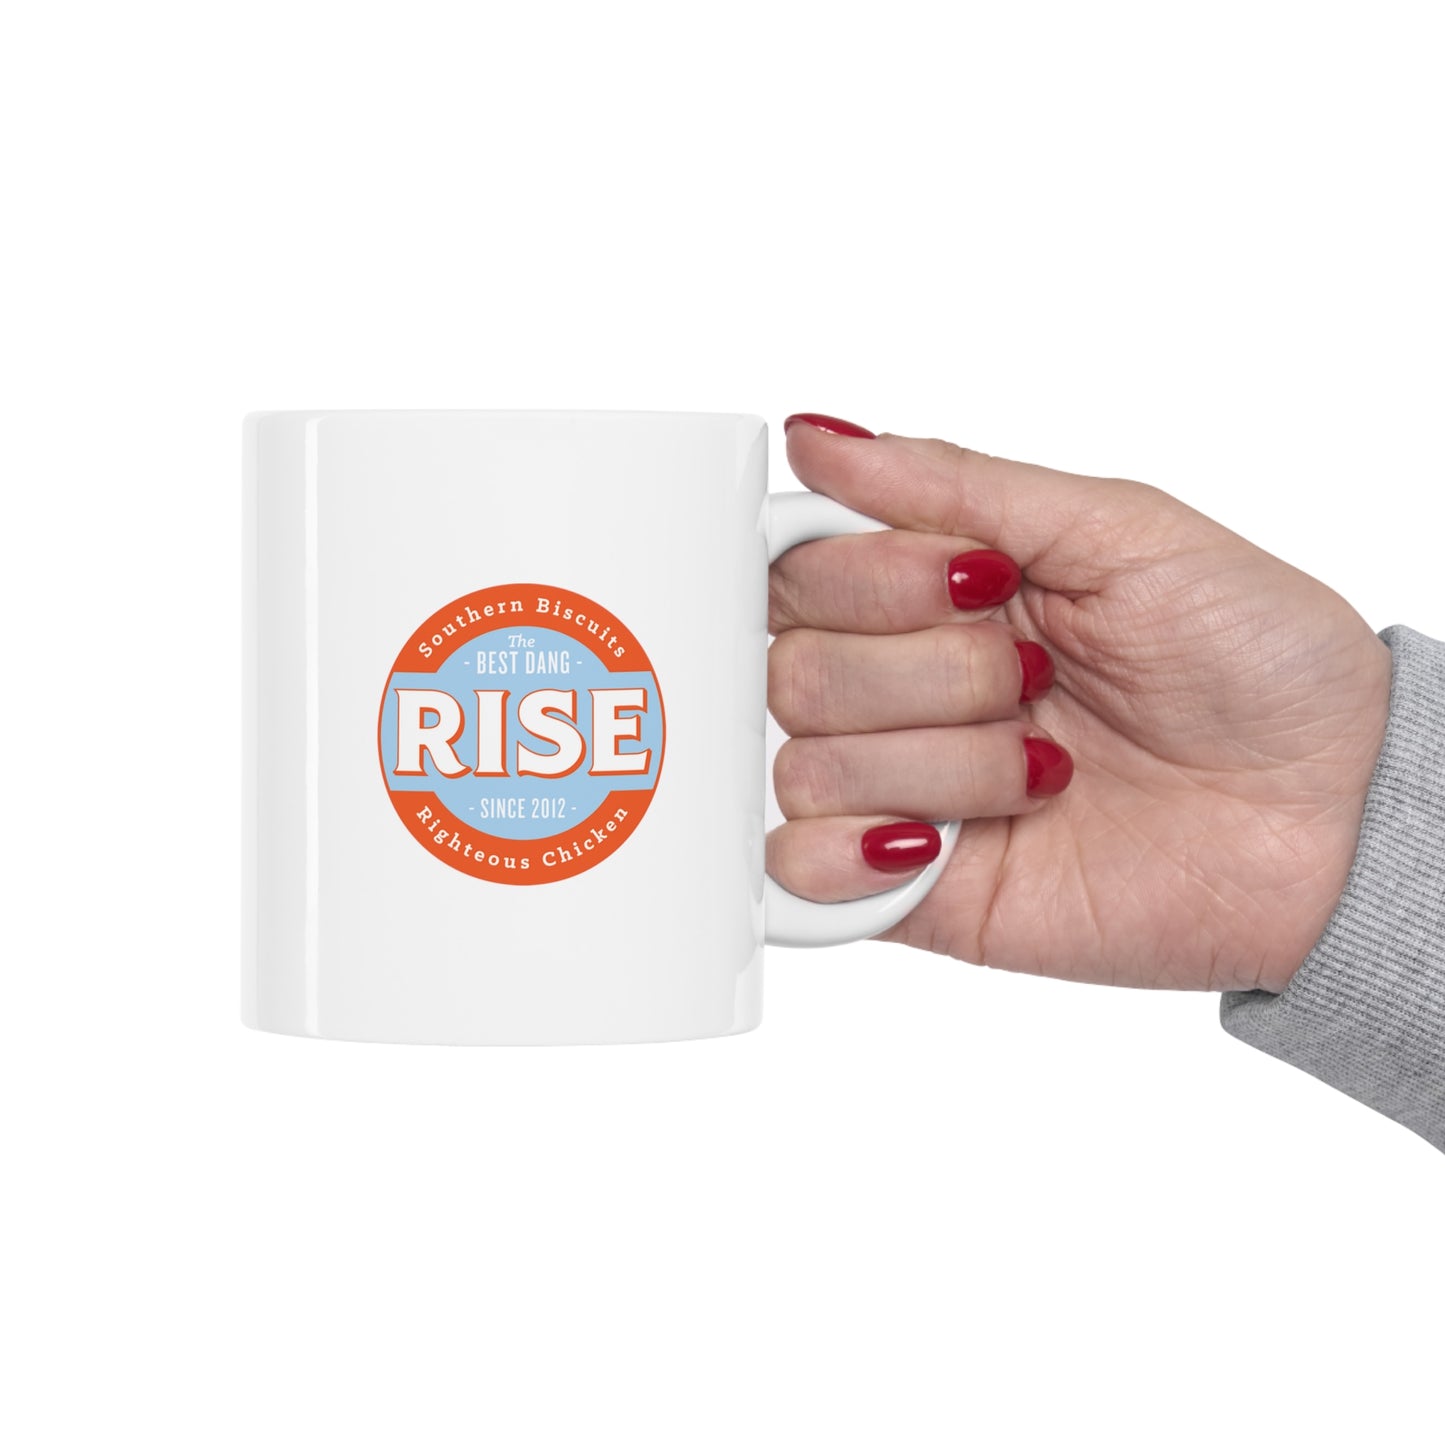 Rise Ceramic Mug 11oz